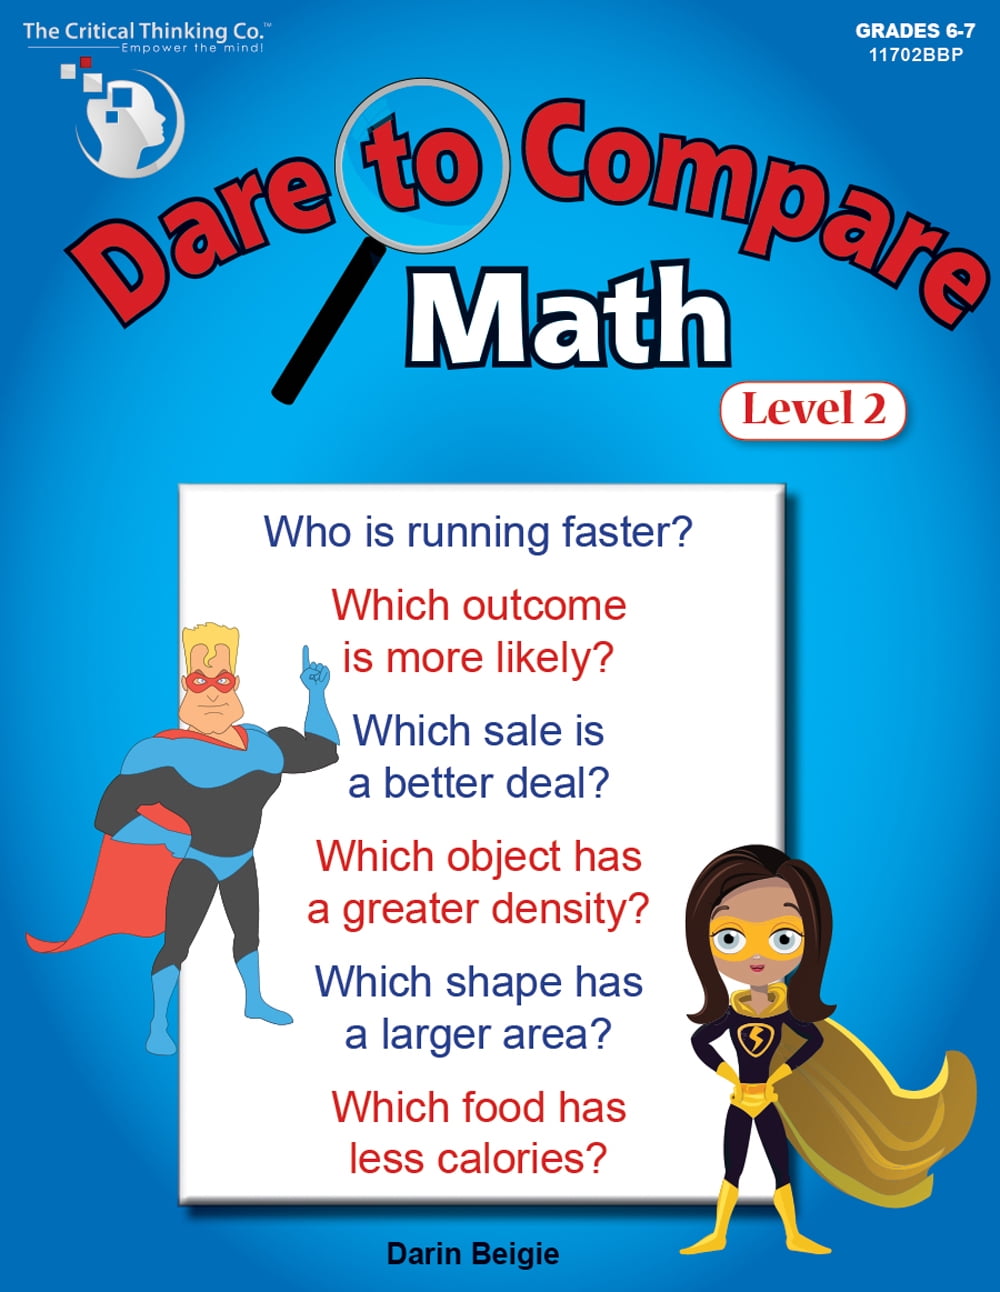 Dare to Compare Math: Level 2 - Using Calculations to Make a Comparison & Come to a Decision (Grades 6-7)